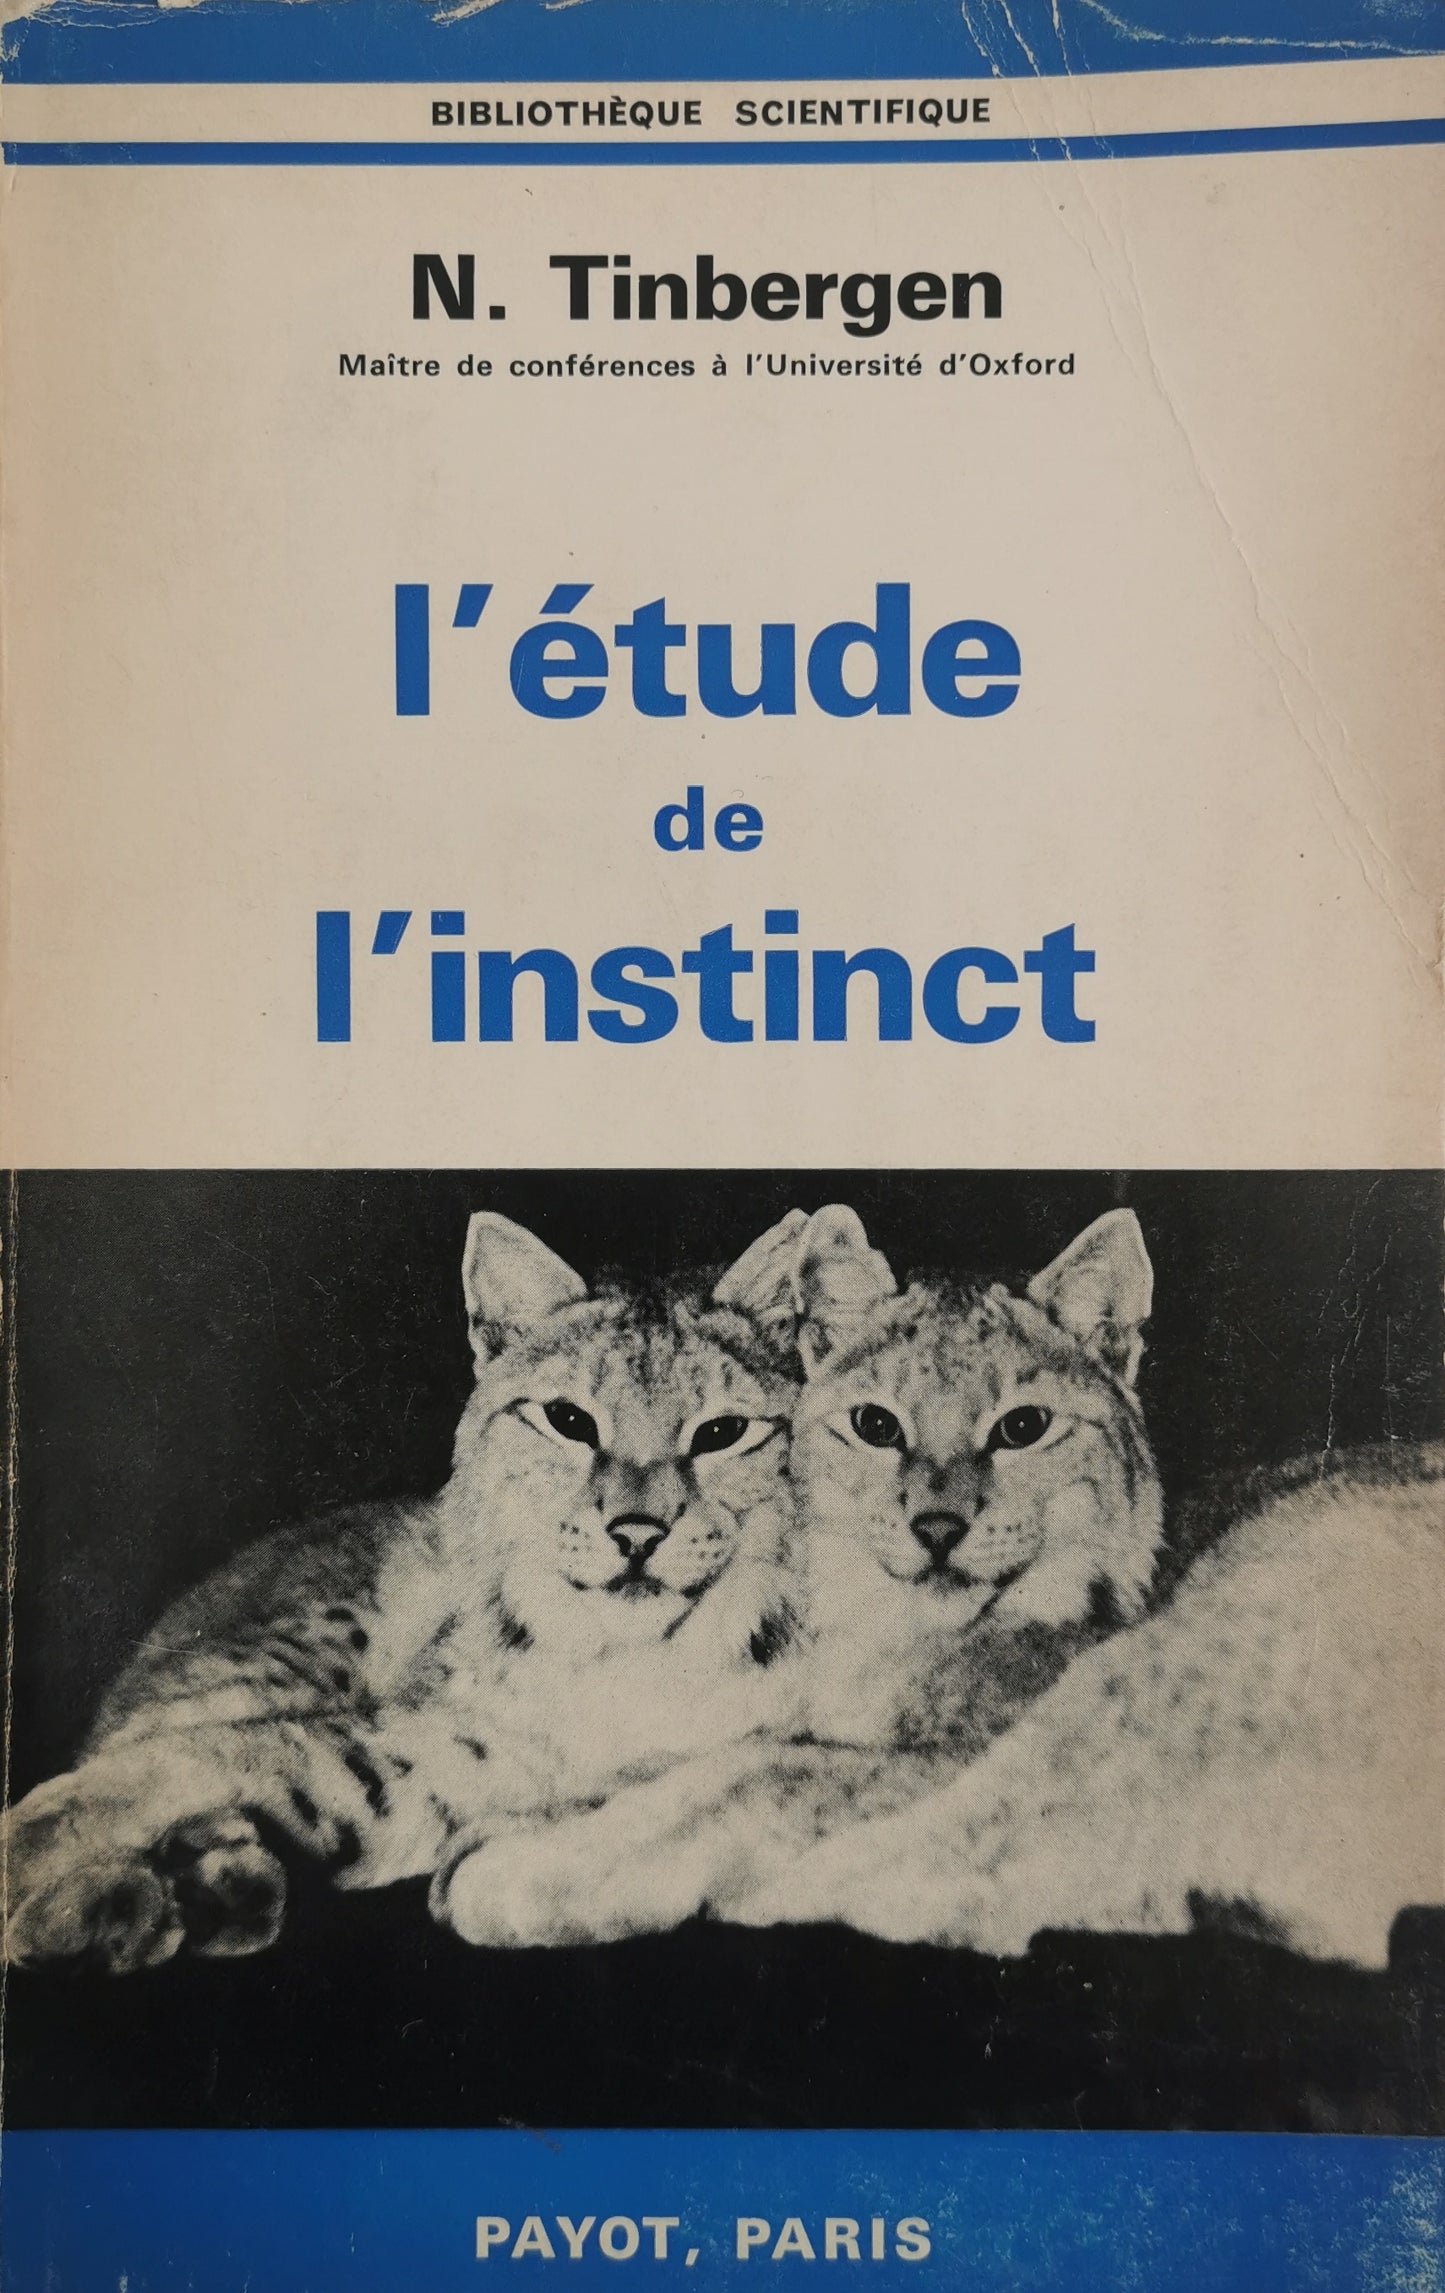 L'étude de l'instinct, N. Tinbergen, trad. B. de Zélicourt, F. Bourlière, Payot, 1971.